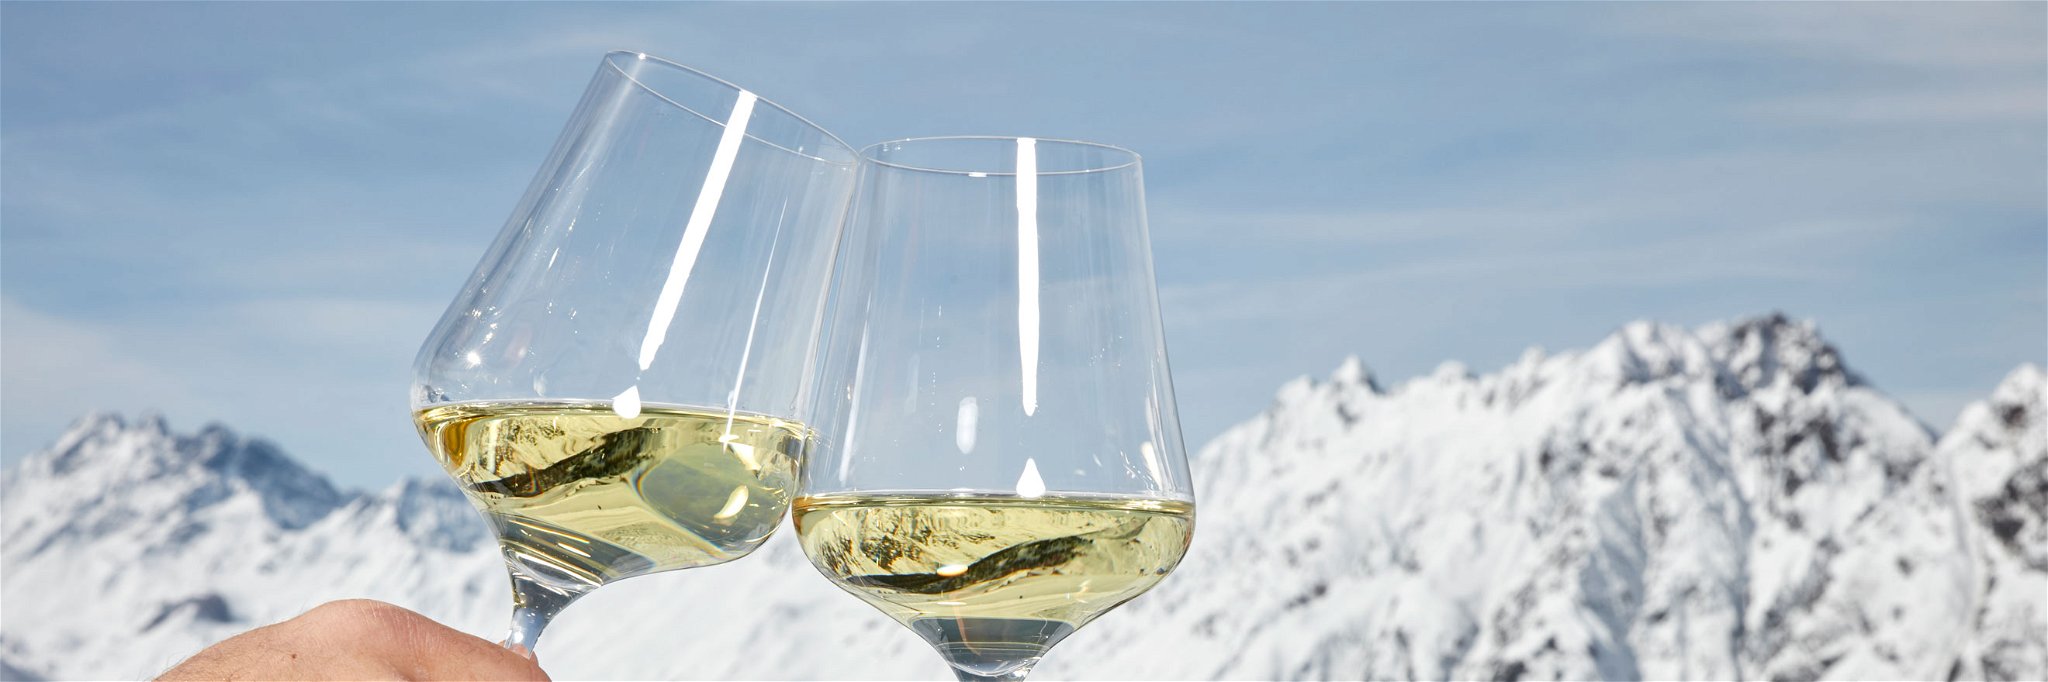 Einen schönen Skitag lässt man am besten mit österreichischem Wein ausklingen.